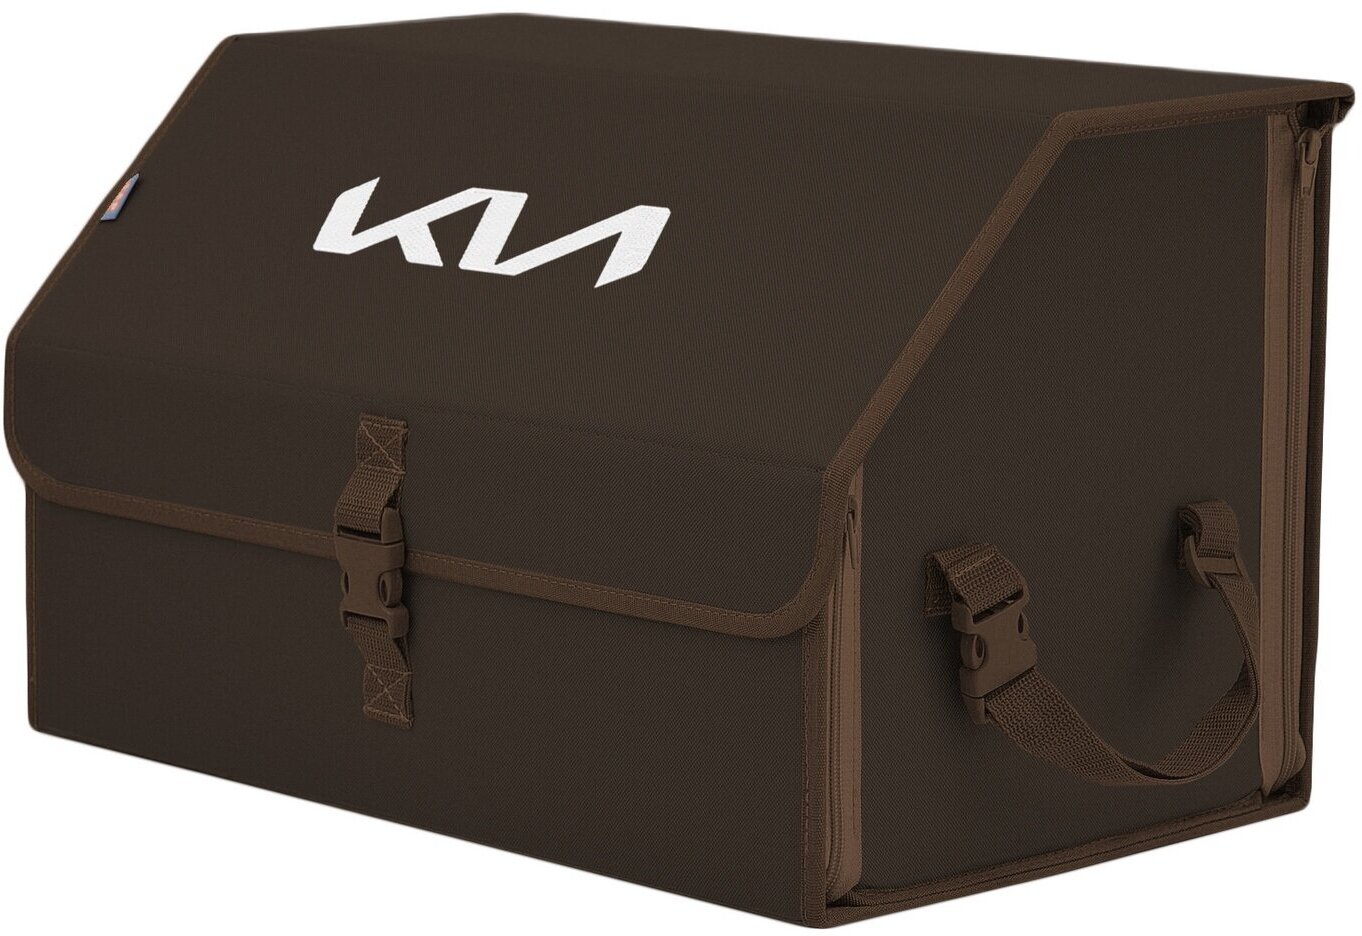 Органайзер-саквояж в багажник "Союз" (размер L). Цвет: коричневый с вышивкой KIA (КИА).